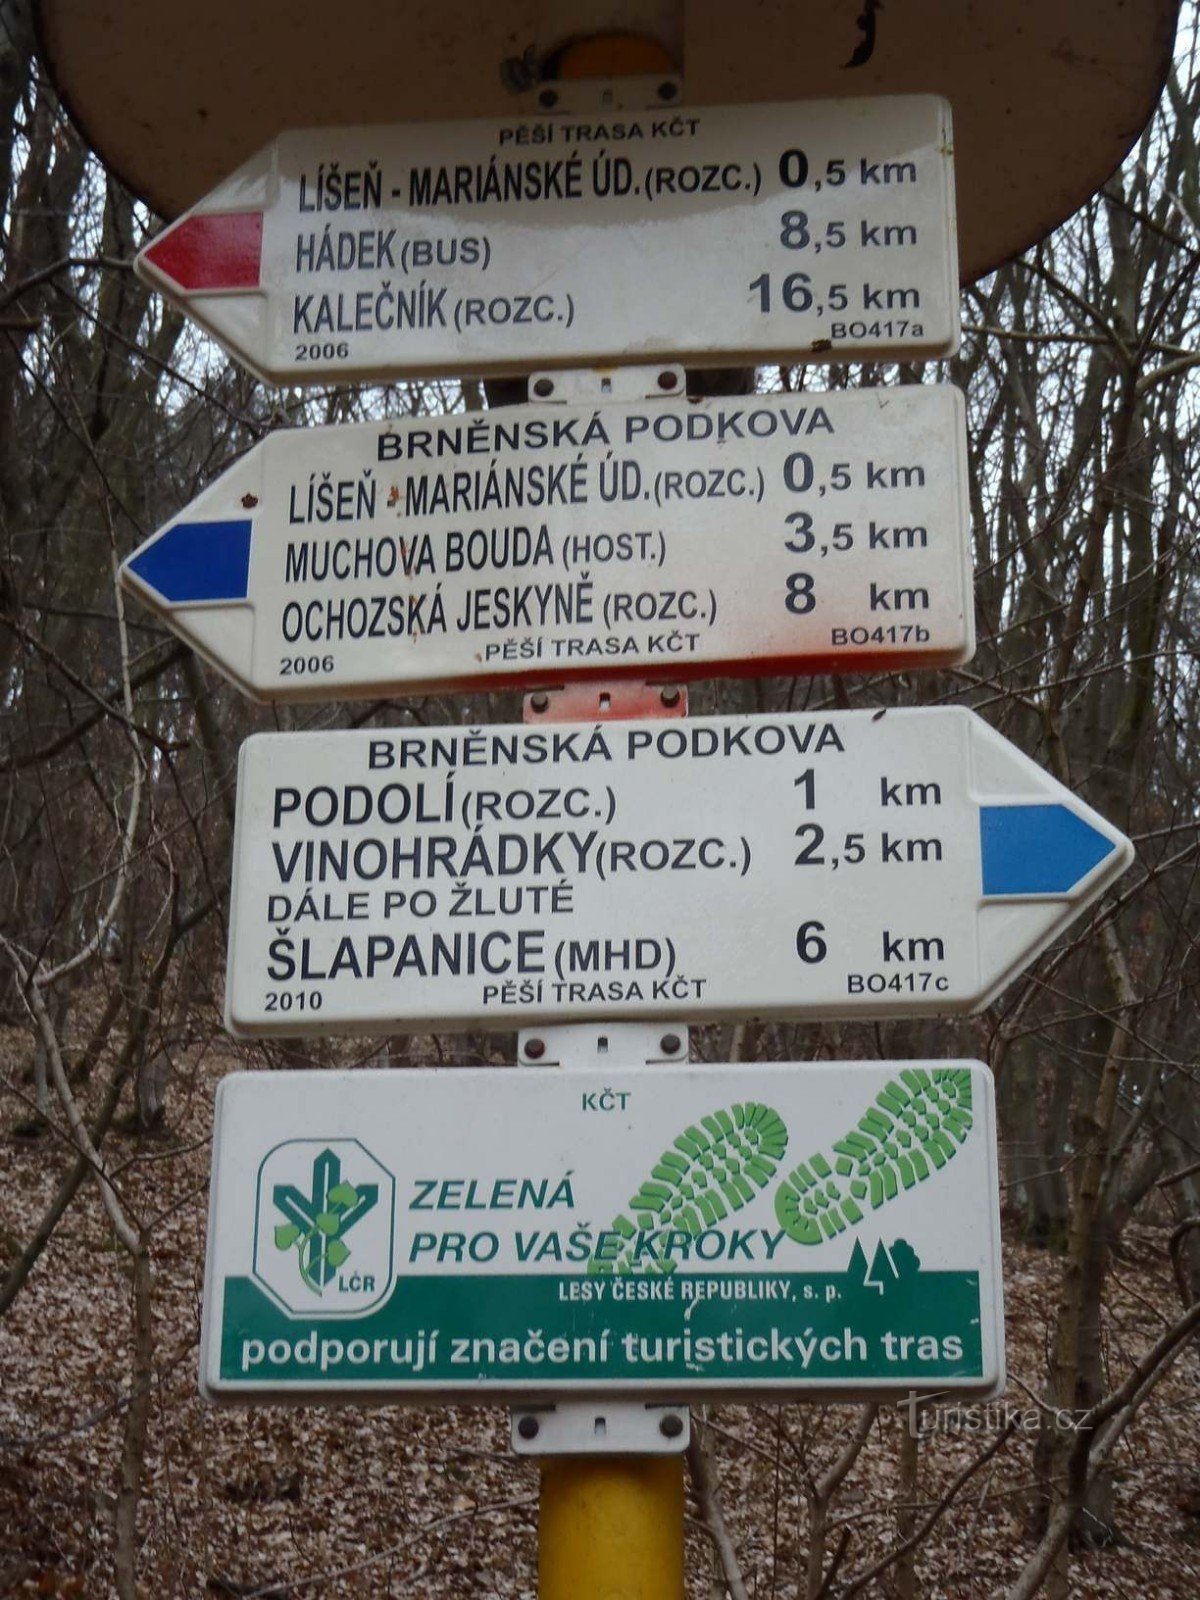 Turistický rozcestník Brno Líšeň Mariánské údolí MHD - 6.2.2012